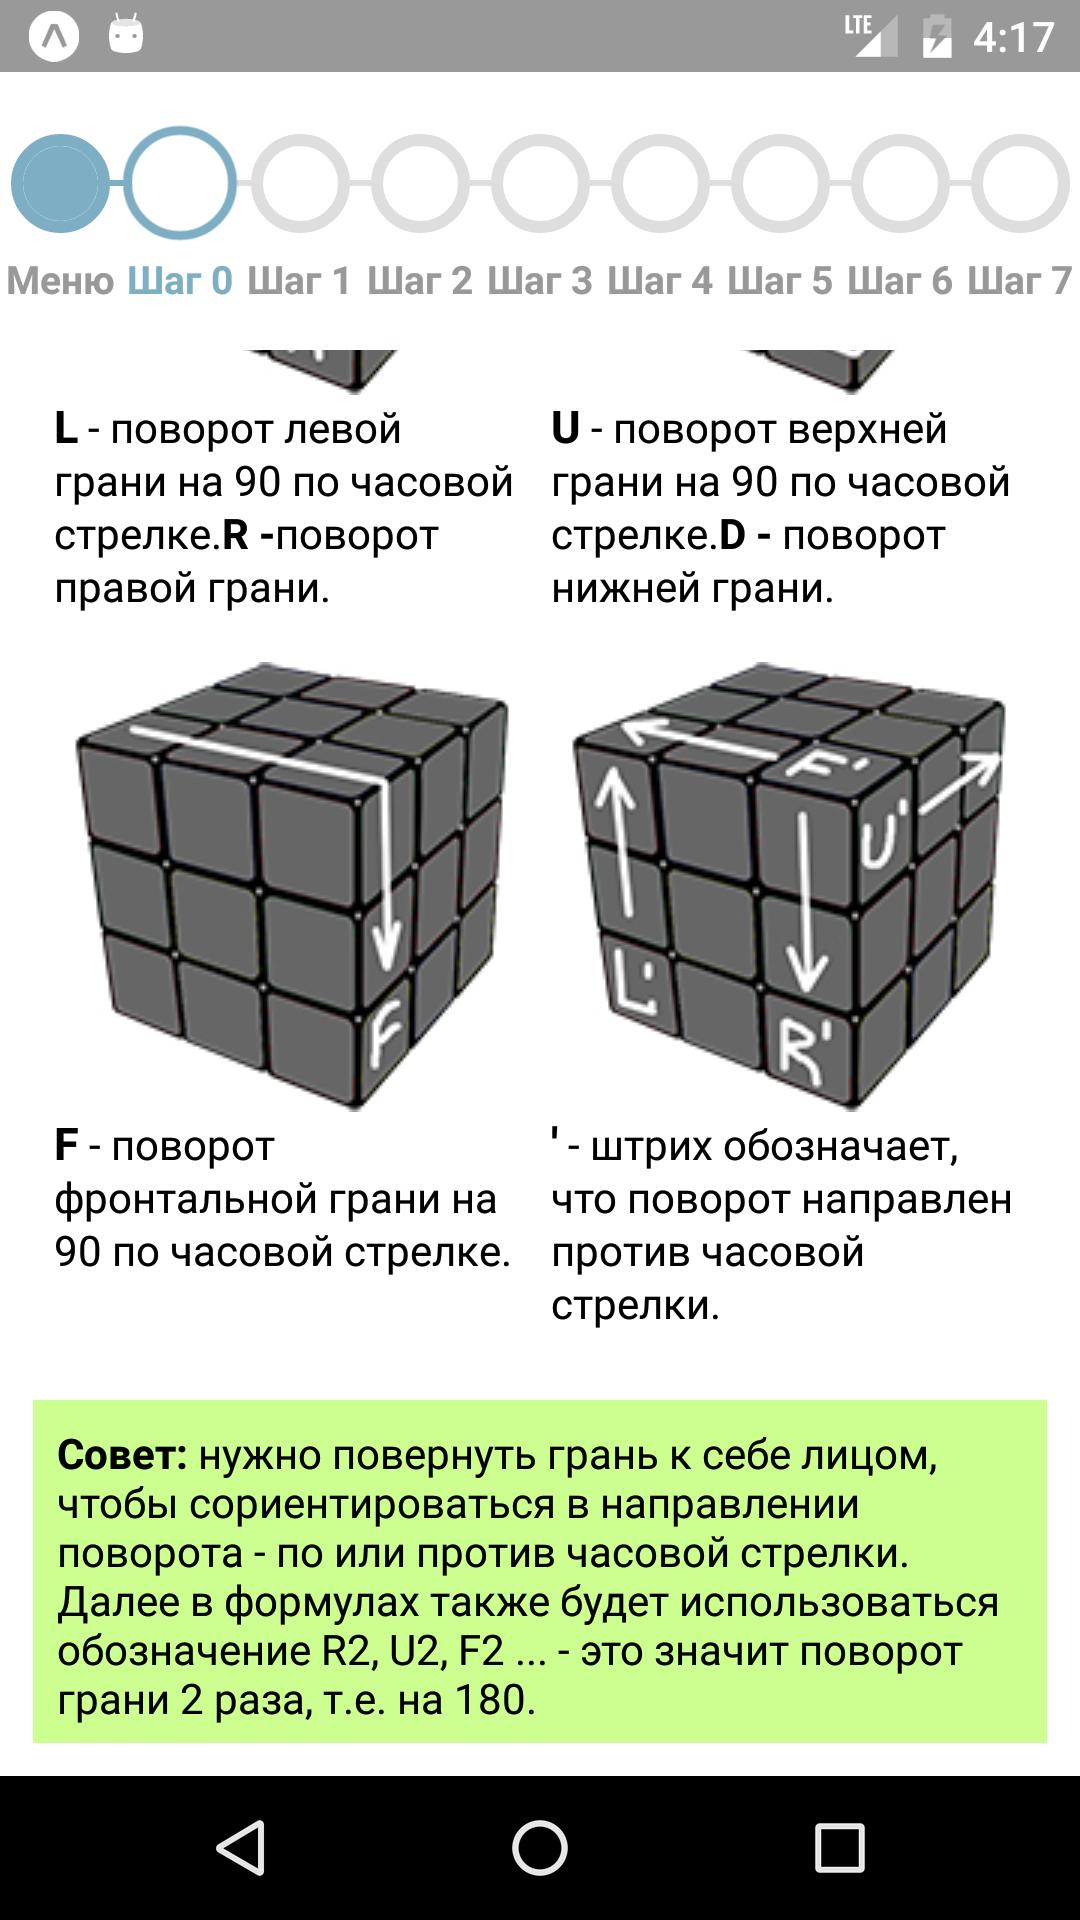 Программа для сборки кубика. Кубик Рубика 3х3 инструкция для начинающих. Как собрать кубик Рубика 3х3 алгоритм. Инструкция сборки кубика Рубика 3х3. Схема кубика Рубика 3х3 для начинающих.